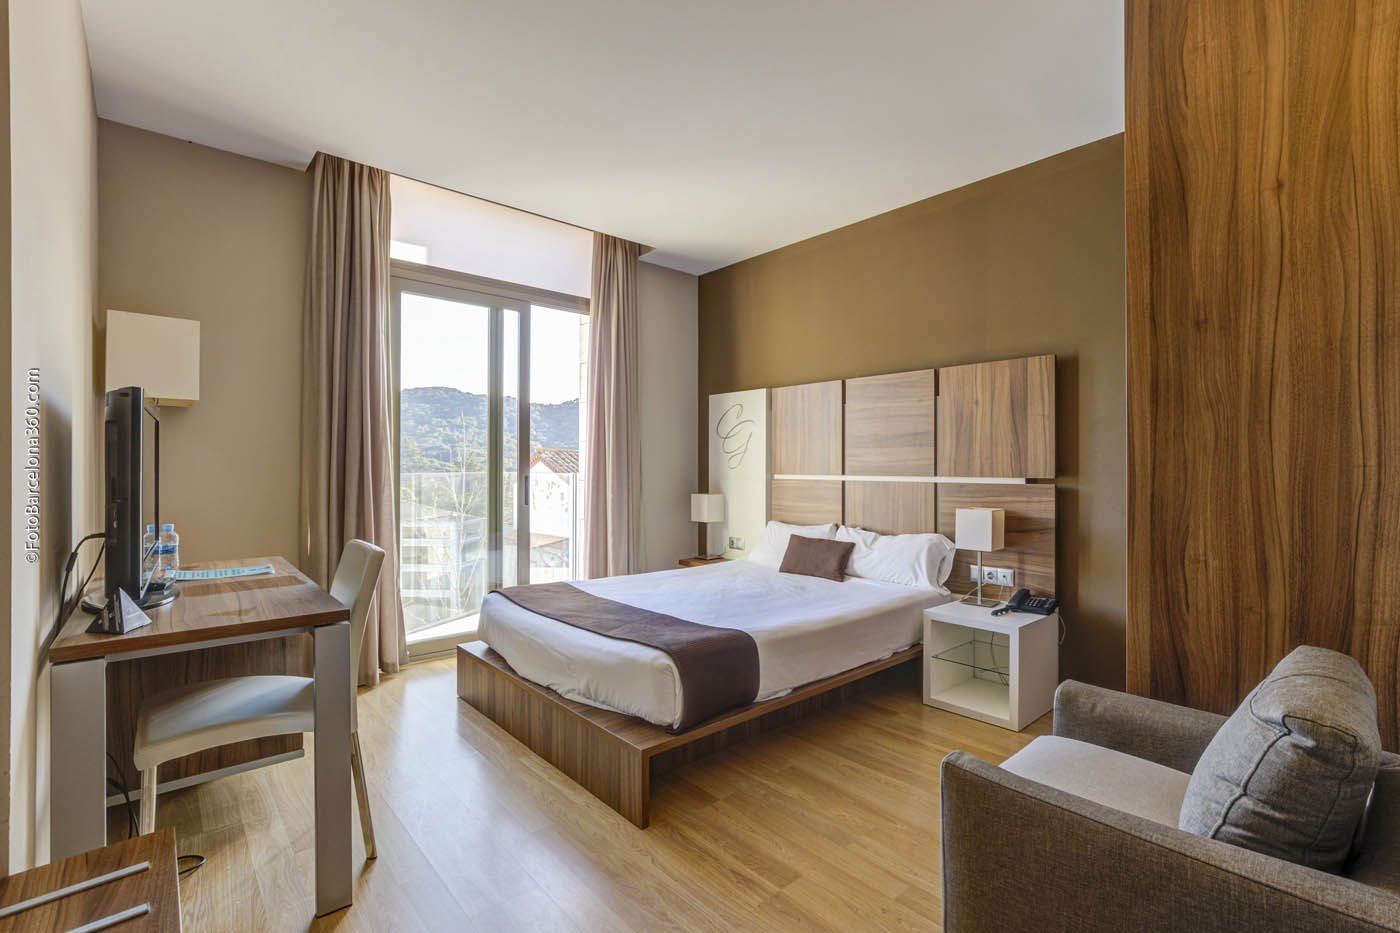 Hotel de 43 habitaciones a 30 minutos de Barcelona.